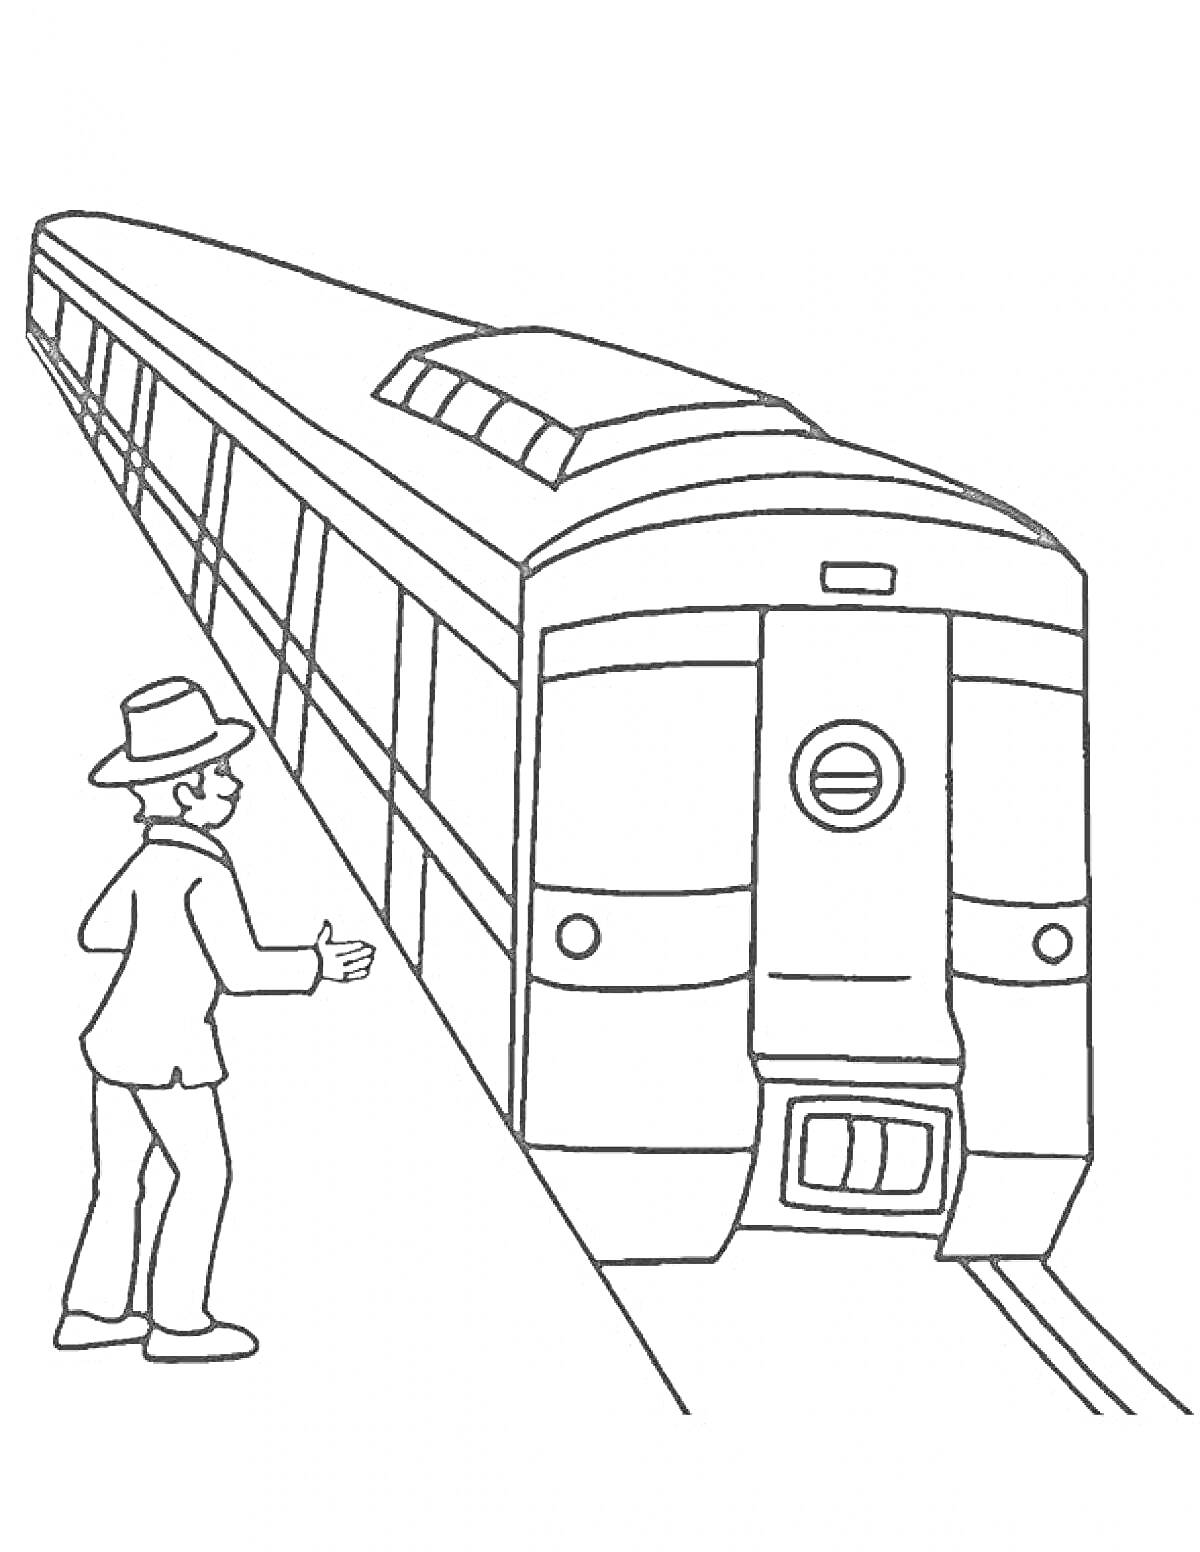 Раскраска Человек в шляпе на платформе и поезд метро